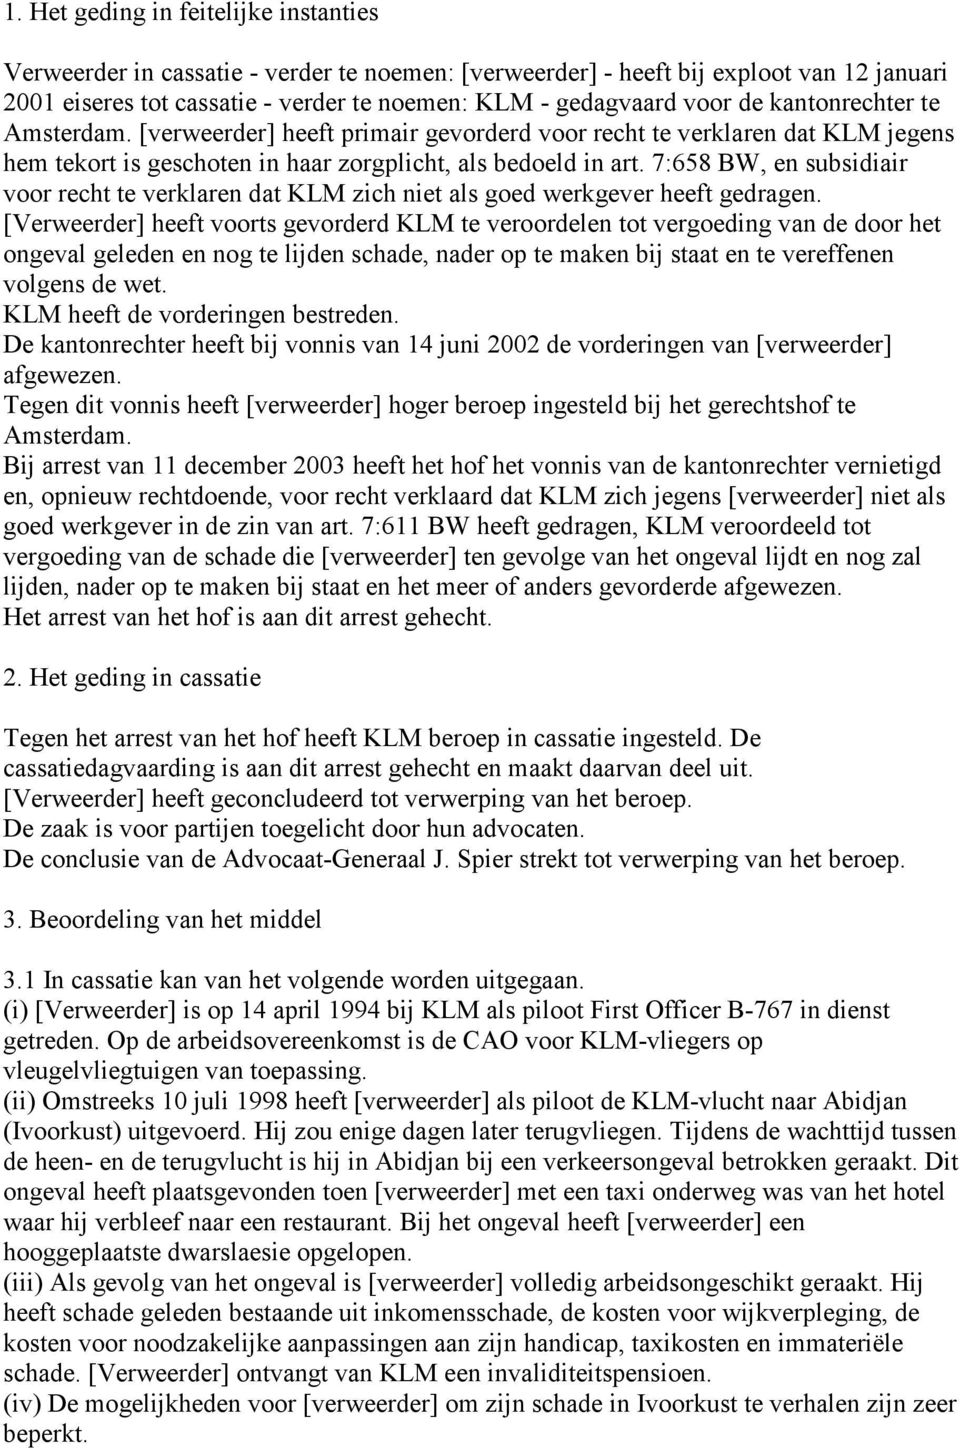 7:658 BW, en subsidiair voor recht te verklaren dat KLM zich niet als goed werkgever heeft gedragen.